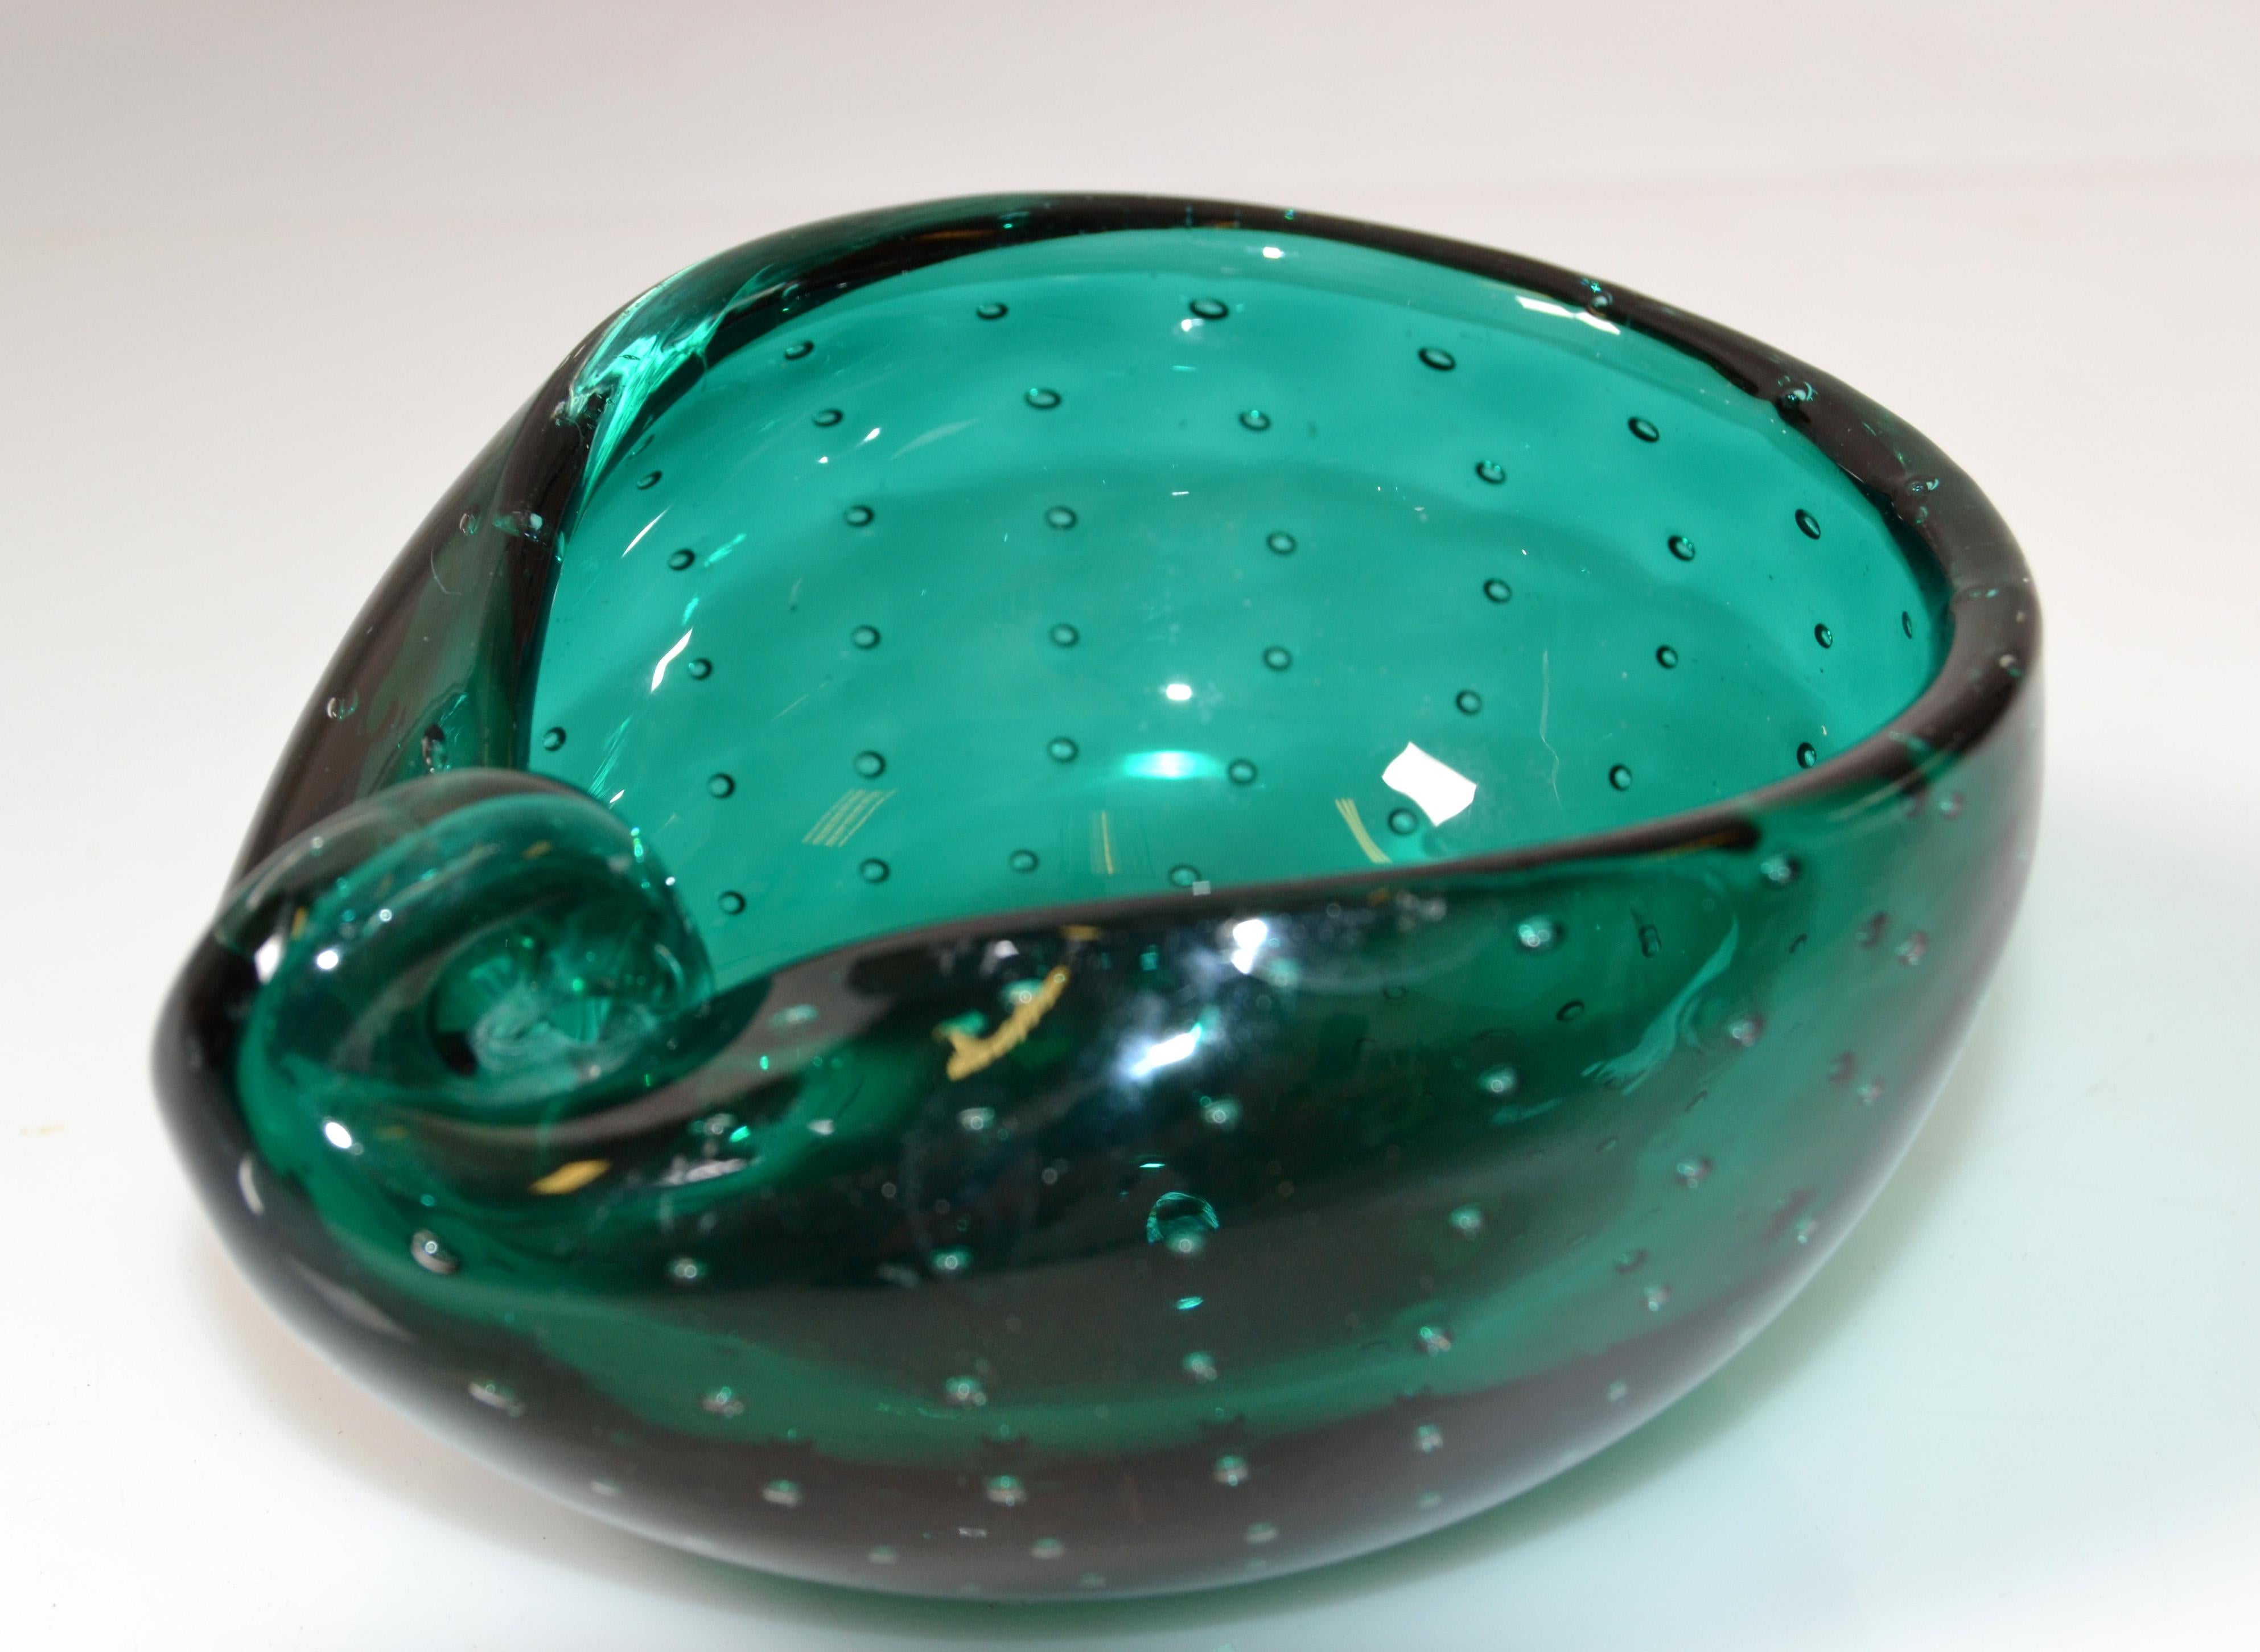 Bol, attrape-cigarette ou cendrier en verre bulle vert de forme ovale, de style italien moderne du milieu du siècle.
Fabriqué à la fin du 20e siècle.
Tout simplement magnifique.